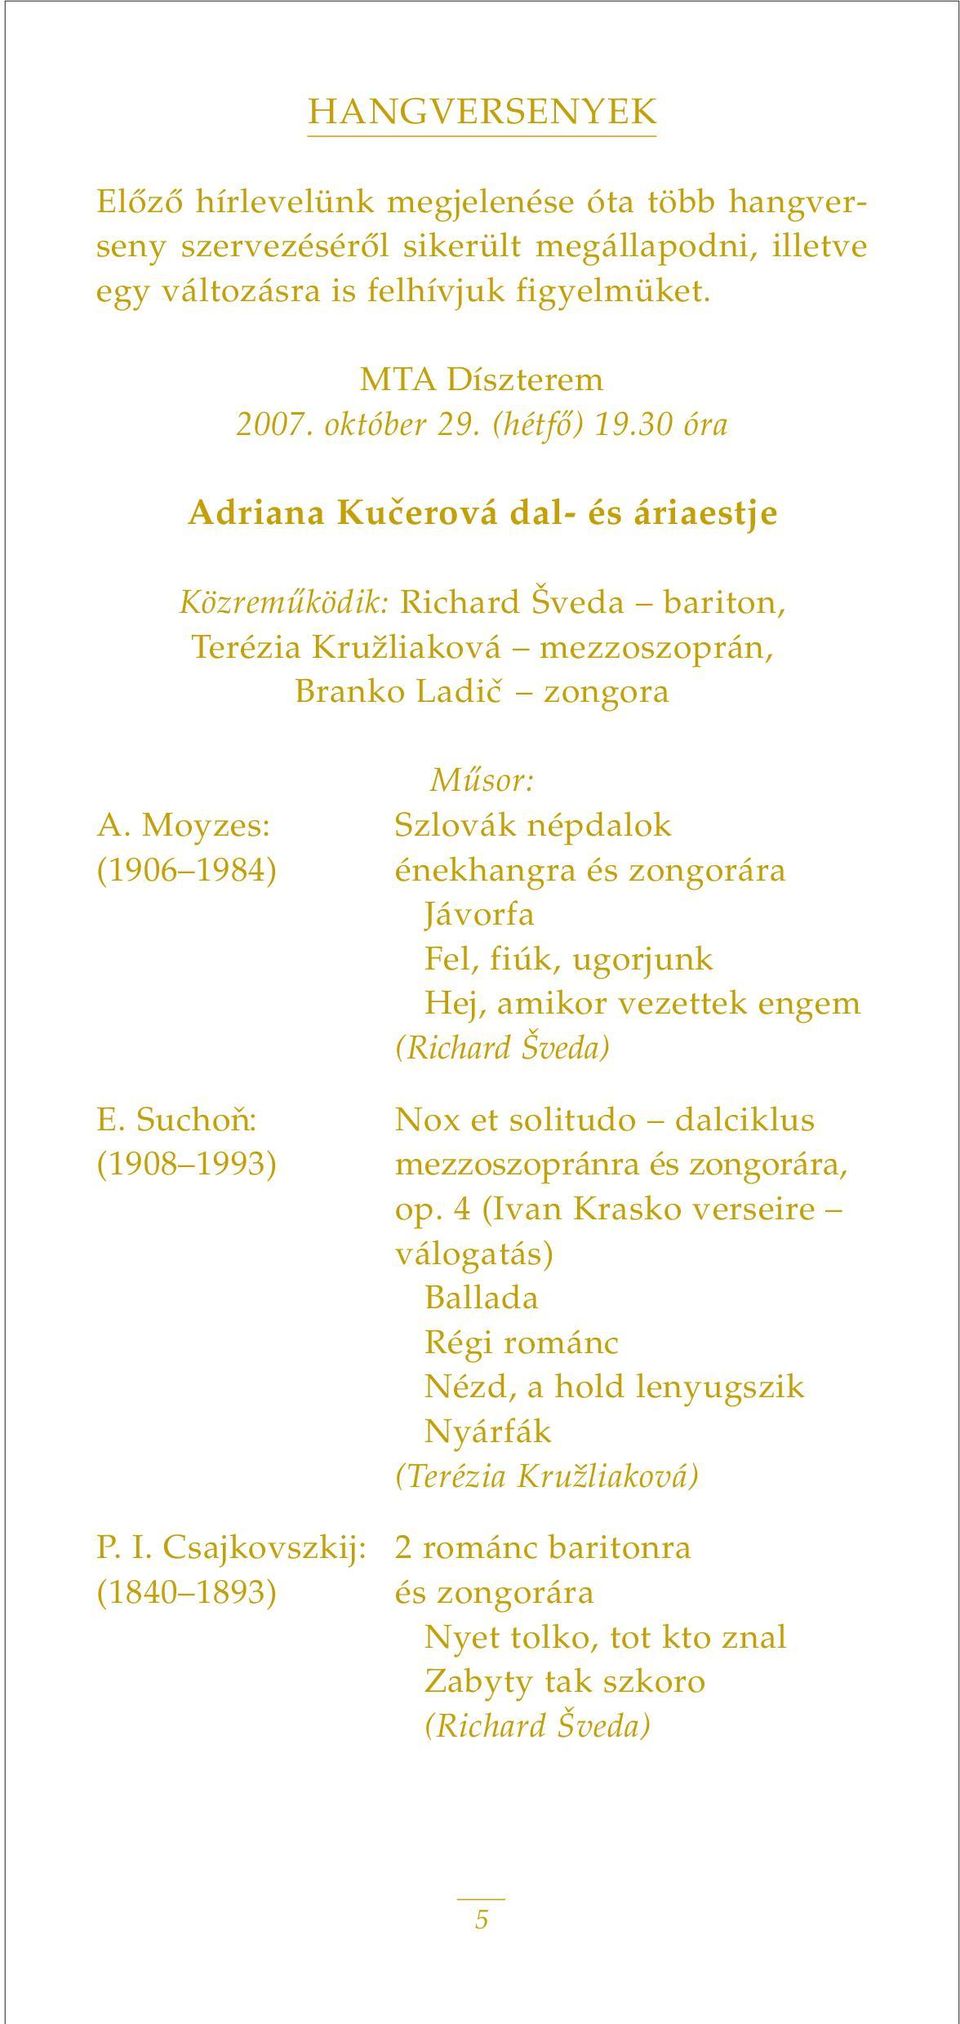 Moyzes: Szlovák népdalok (1906 1984) énekhangra és zongorára Jávorfa Fel, fiúk, ugorjunk Hej, amikor vezettek engem (Richard Šveda) E.